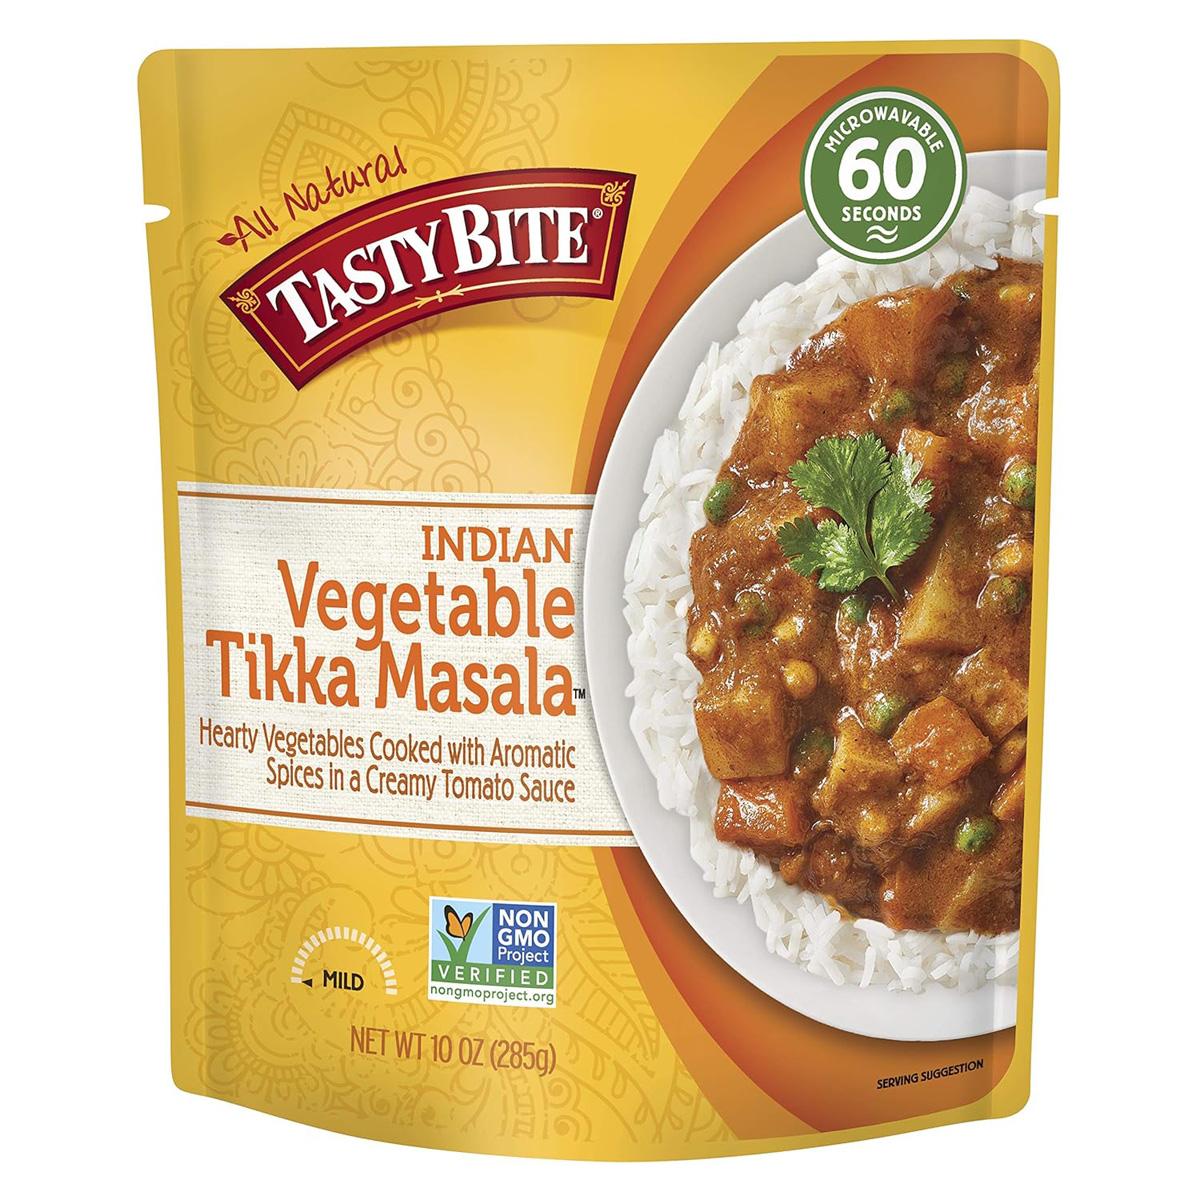 Tasty Bite Vegetable Tikka Masala 6 Pack for $14.04